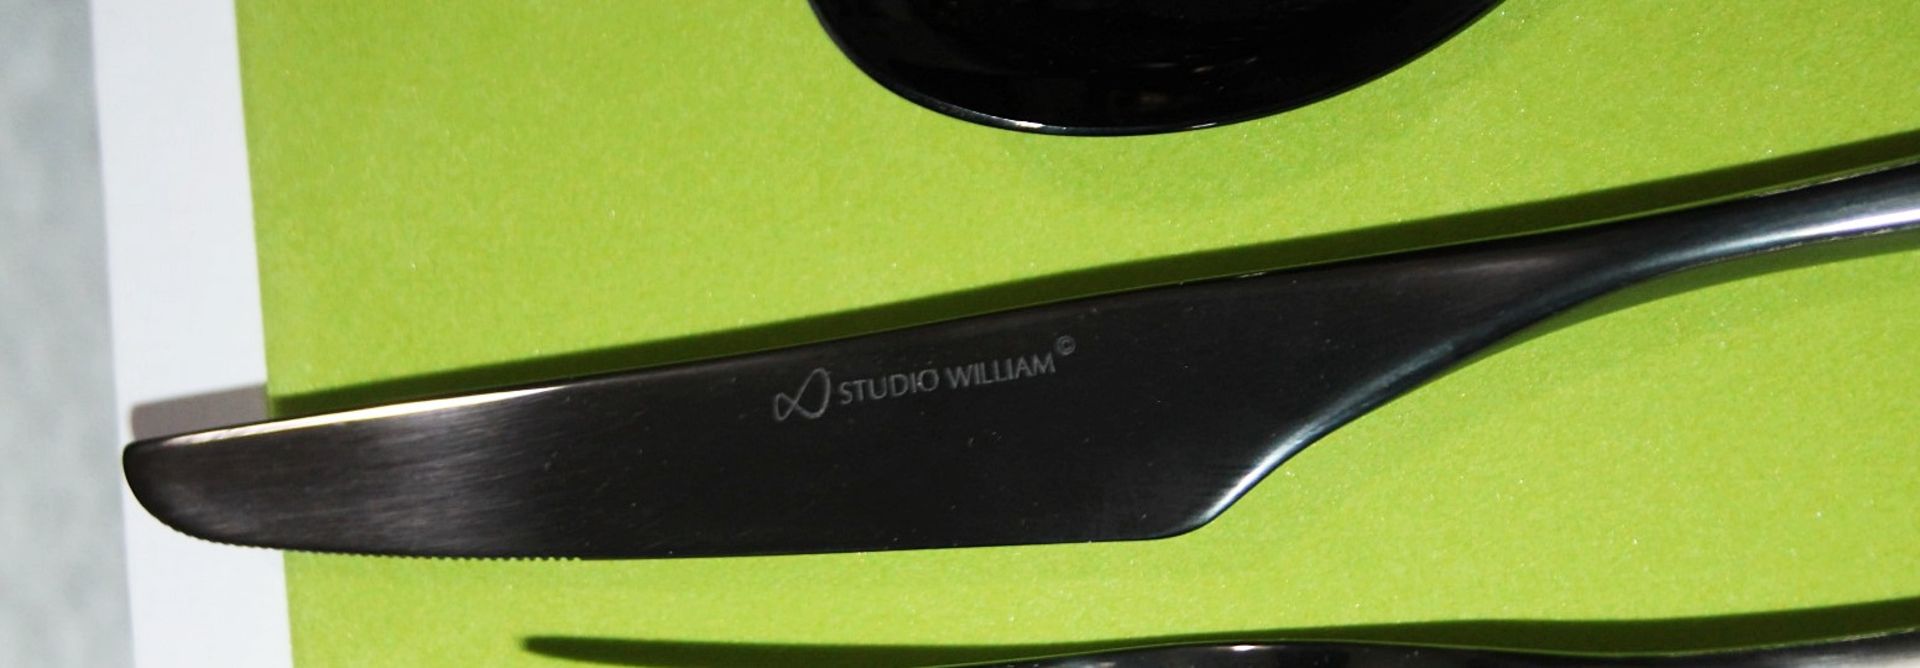 1 x STUDIO WILLIAM 'Tilia Obsidian' 56-Piece Cutlery Set - Original Price £930.00 - Unused Boxed - Image 10 of 11